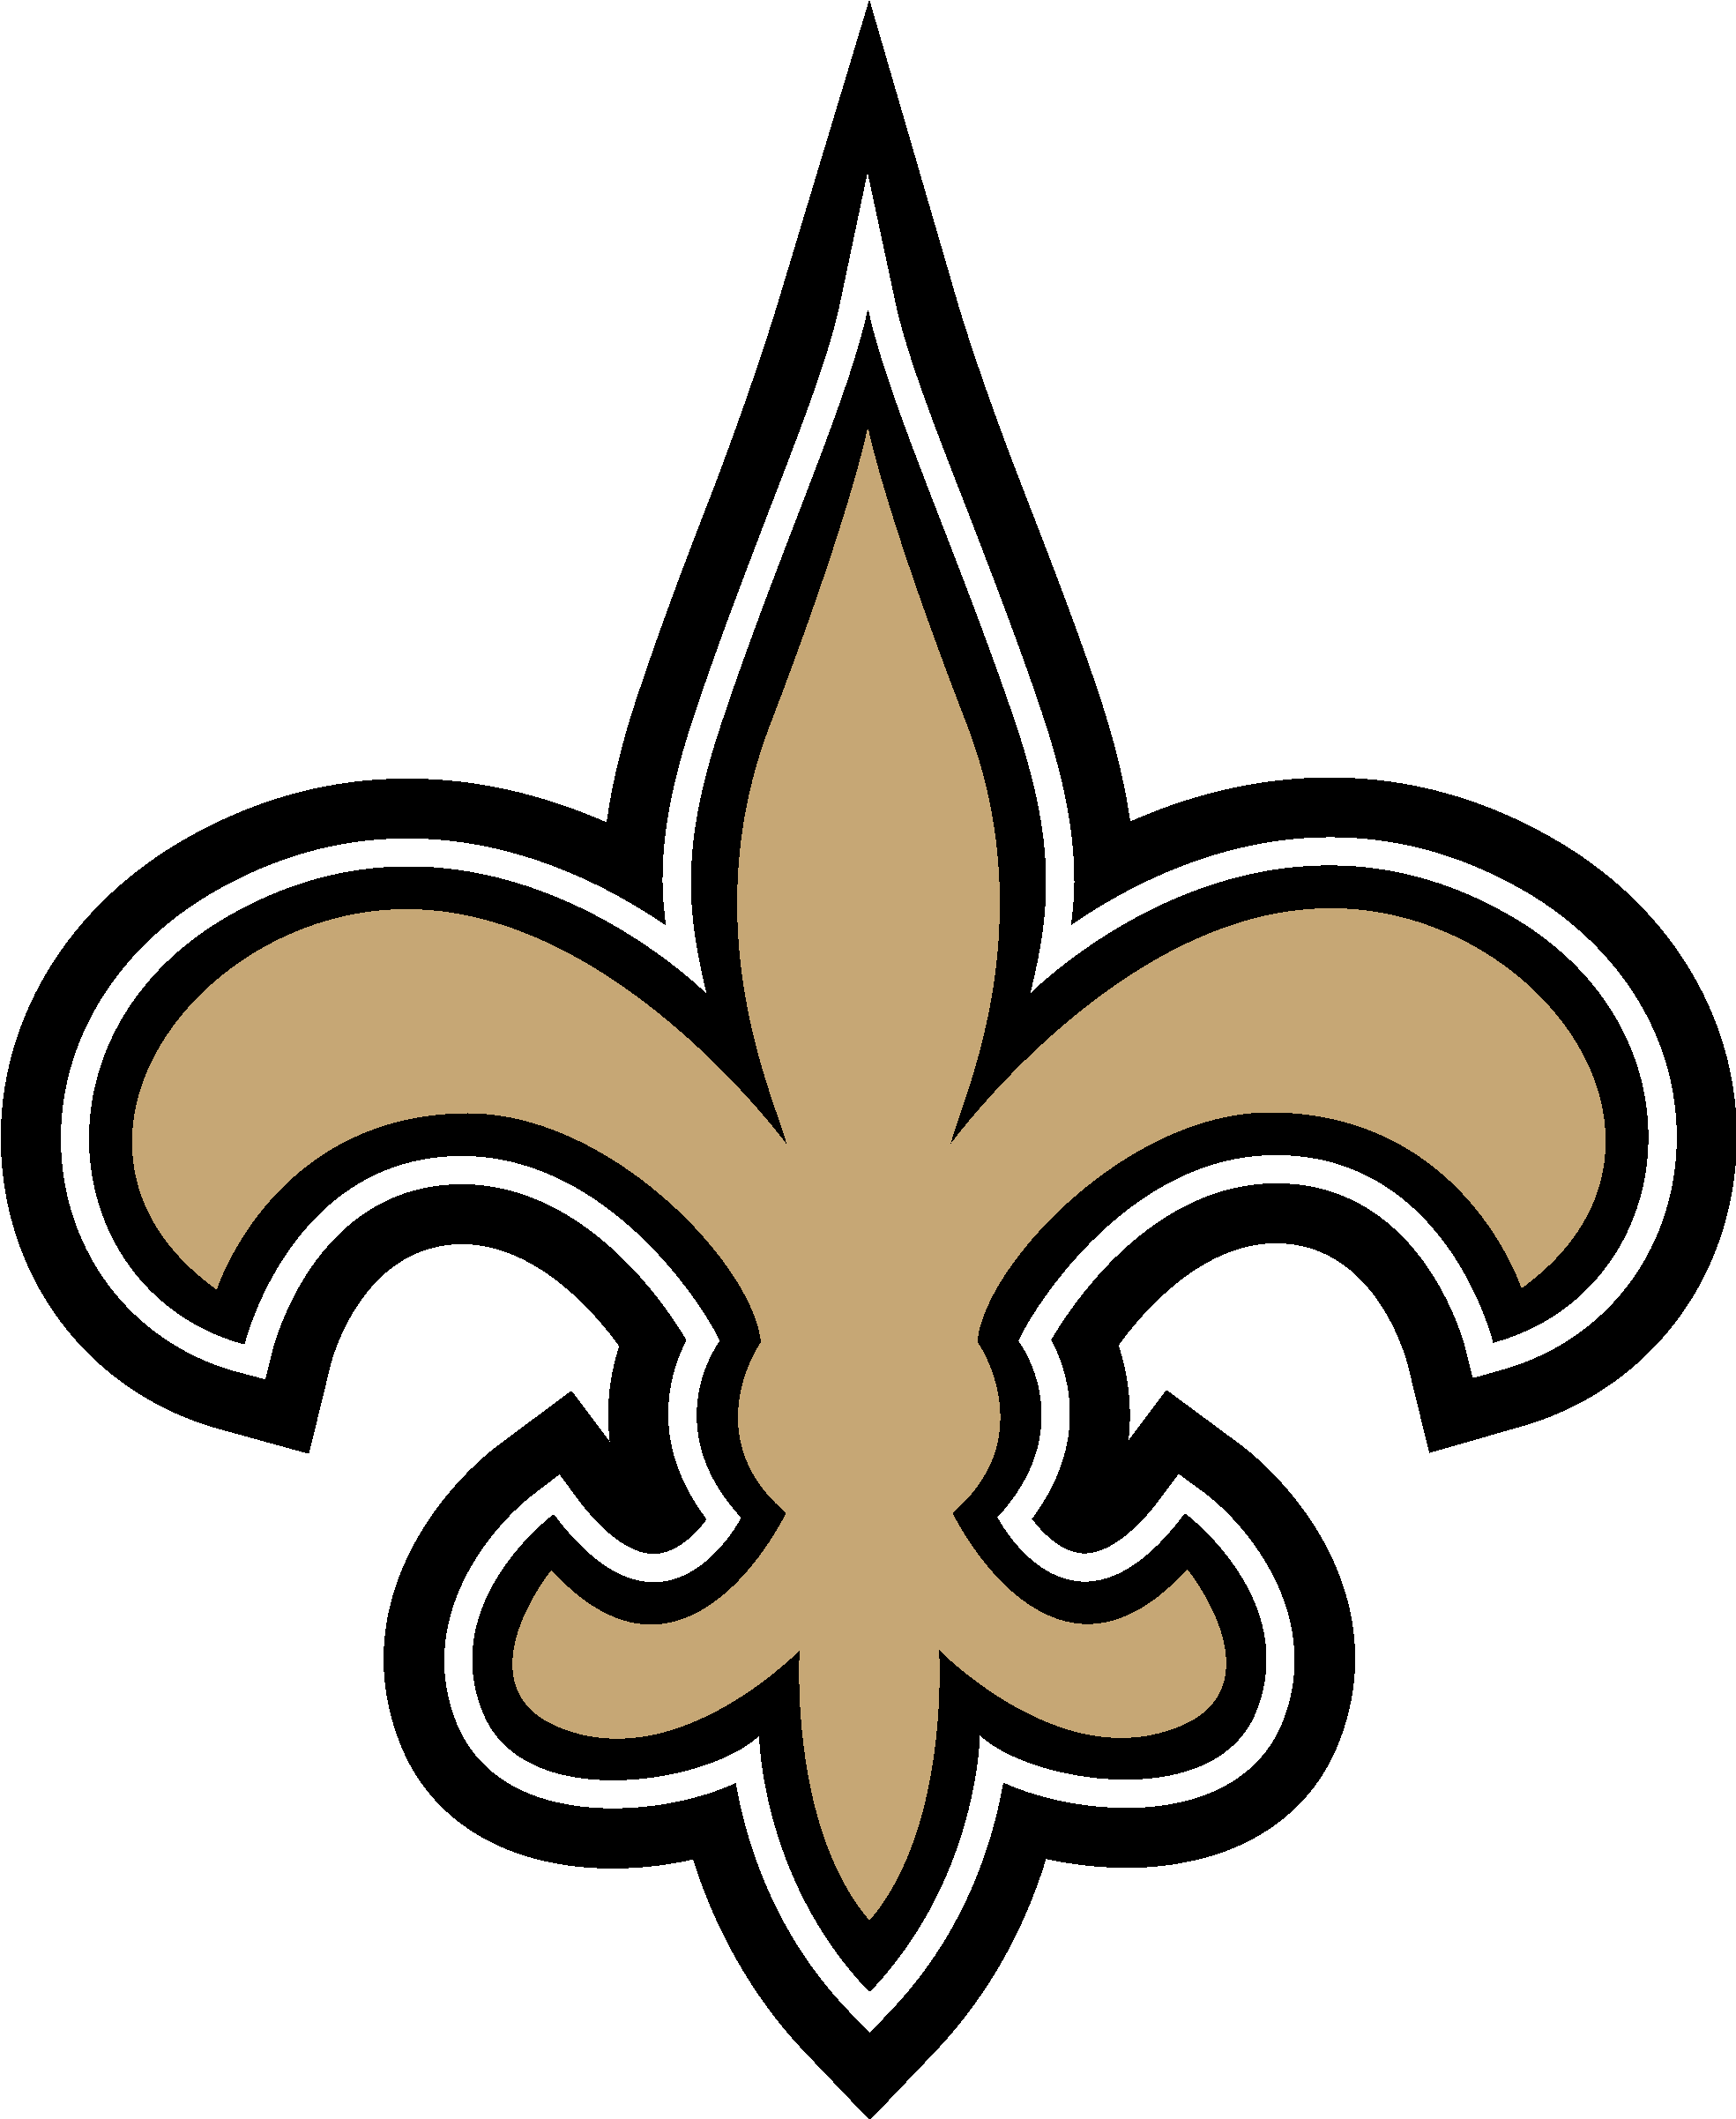 New Orleans Saints Logo - New Orleans Saints Logo (2131x2568)